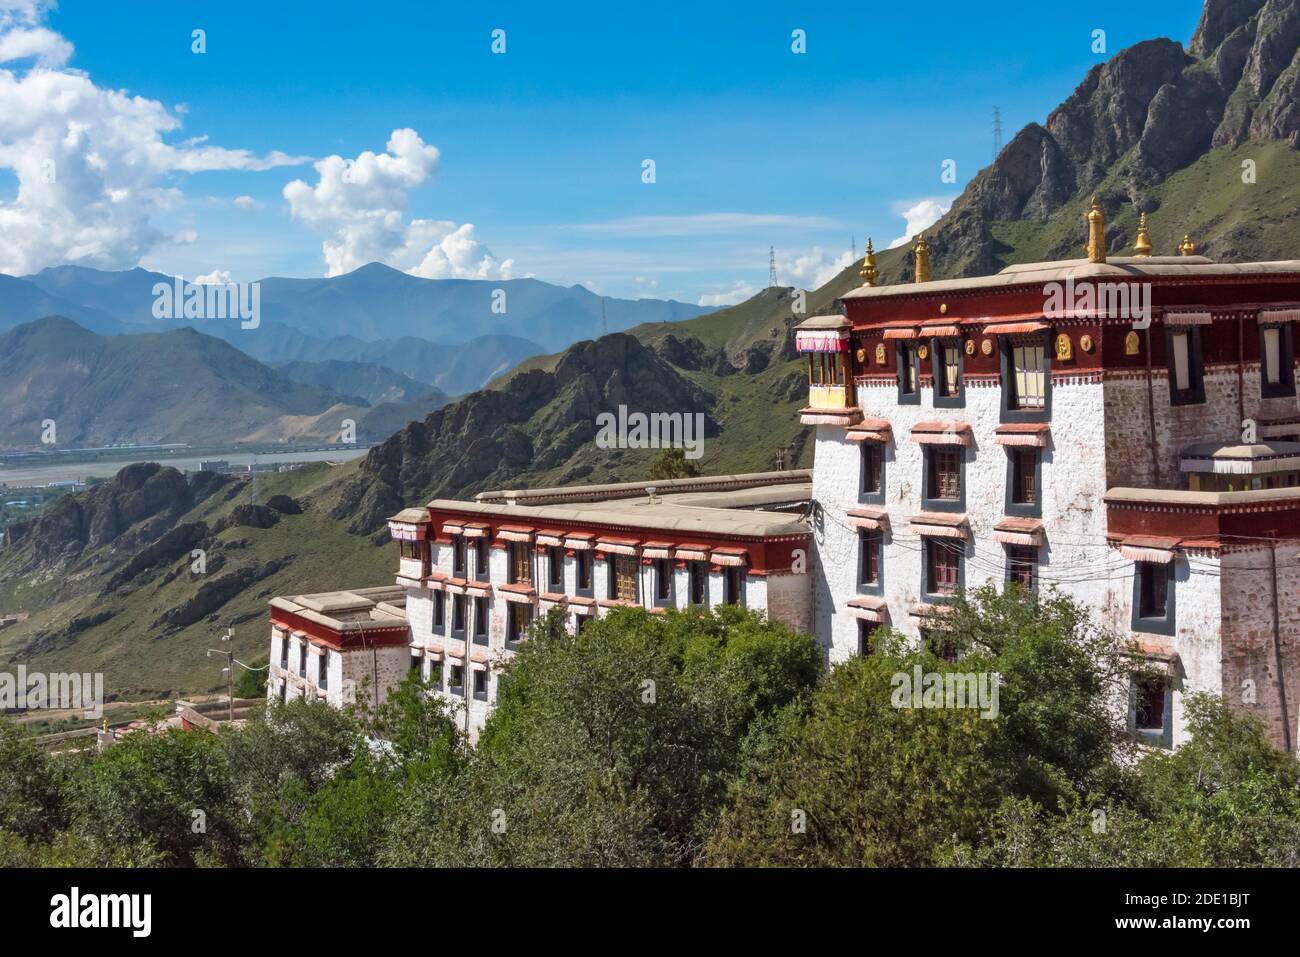 Monastère de Drepung, l'un des trois grands monastères universitaires Gelug du Tibet, Lhassa, Tibet, Chine Banque D'Images